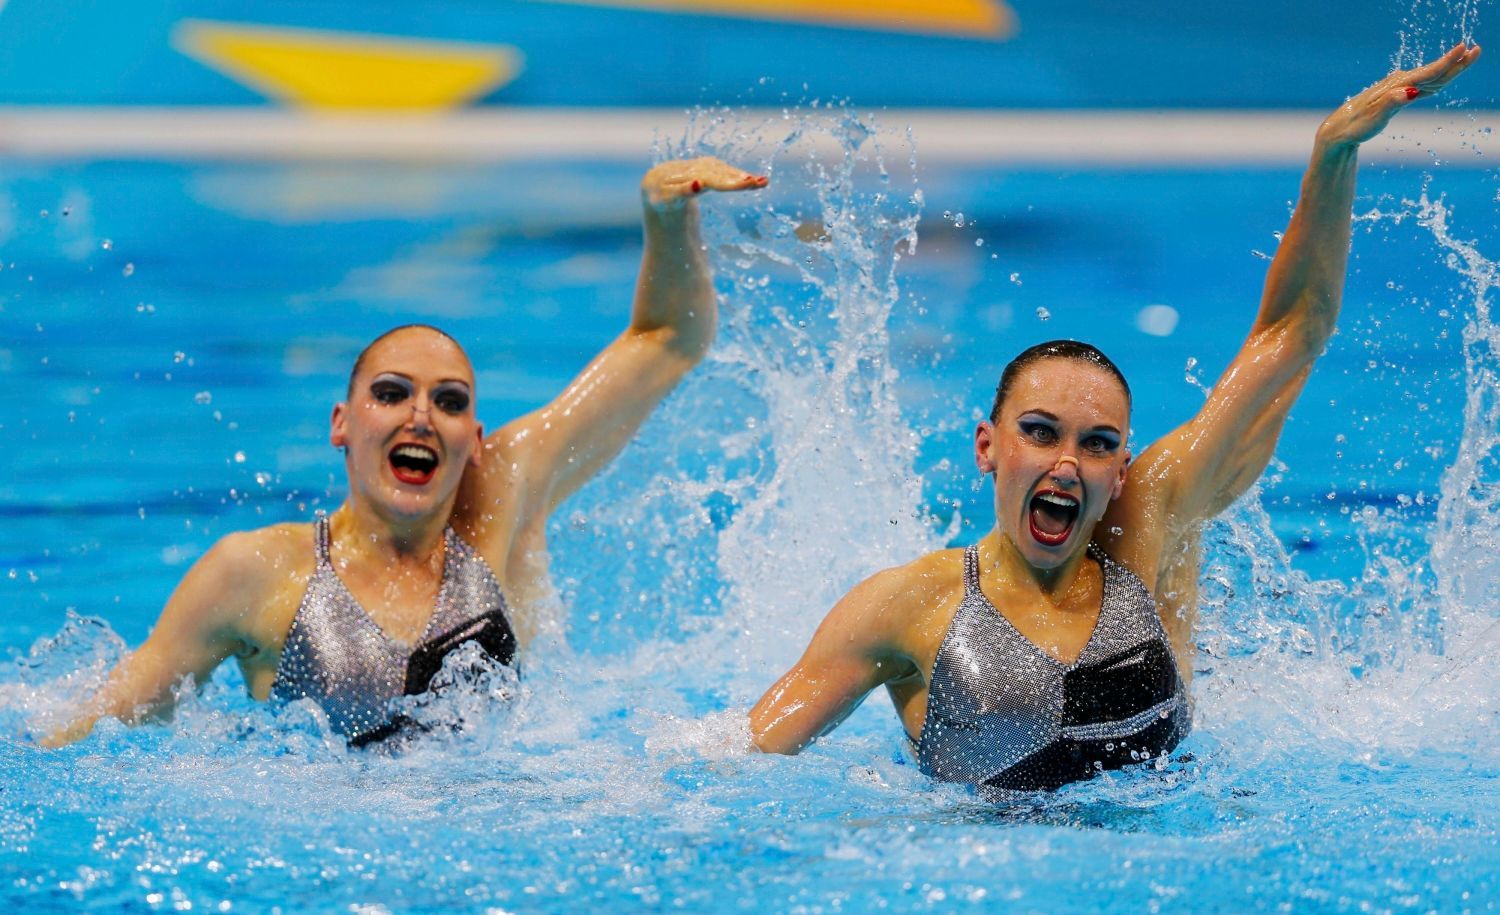 Ruské synchronizované plavkyně Natalia Iščenková a Svetlana Romašinová v kvalifikaci na OH 2012 v Londýně.